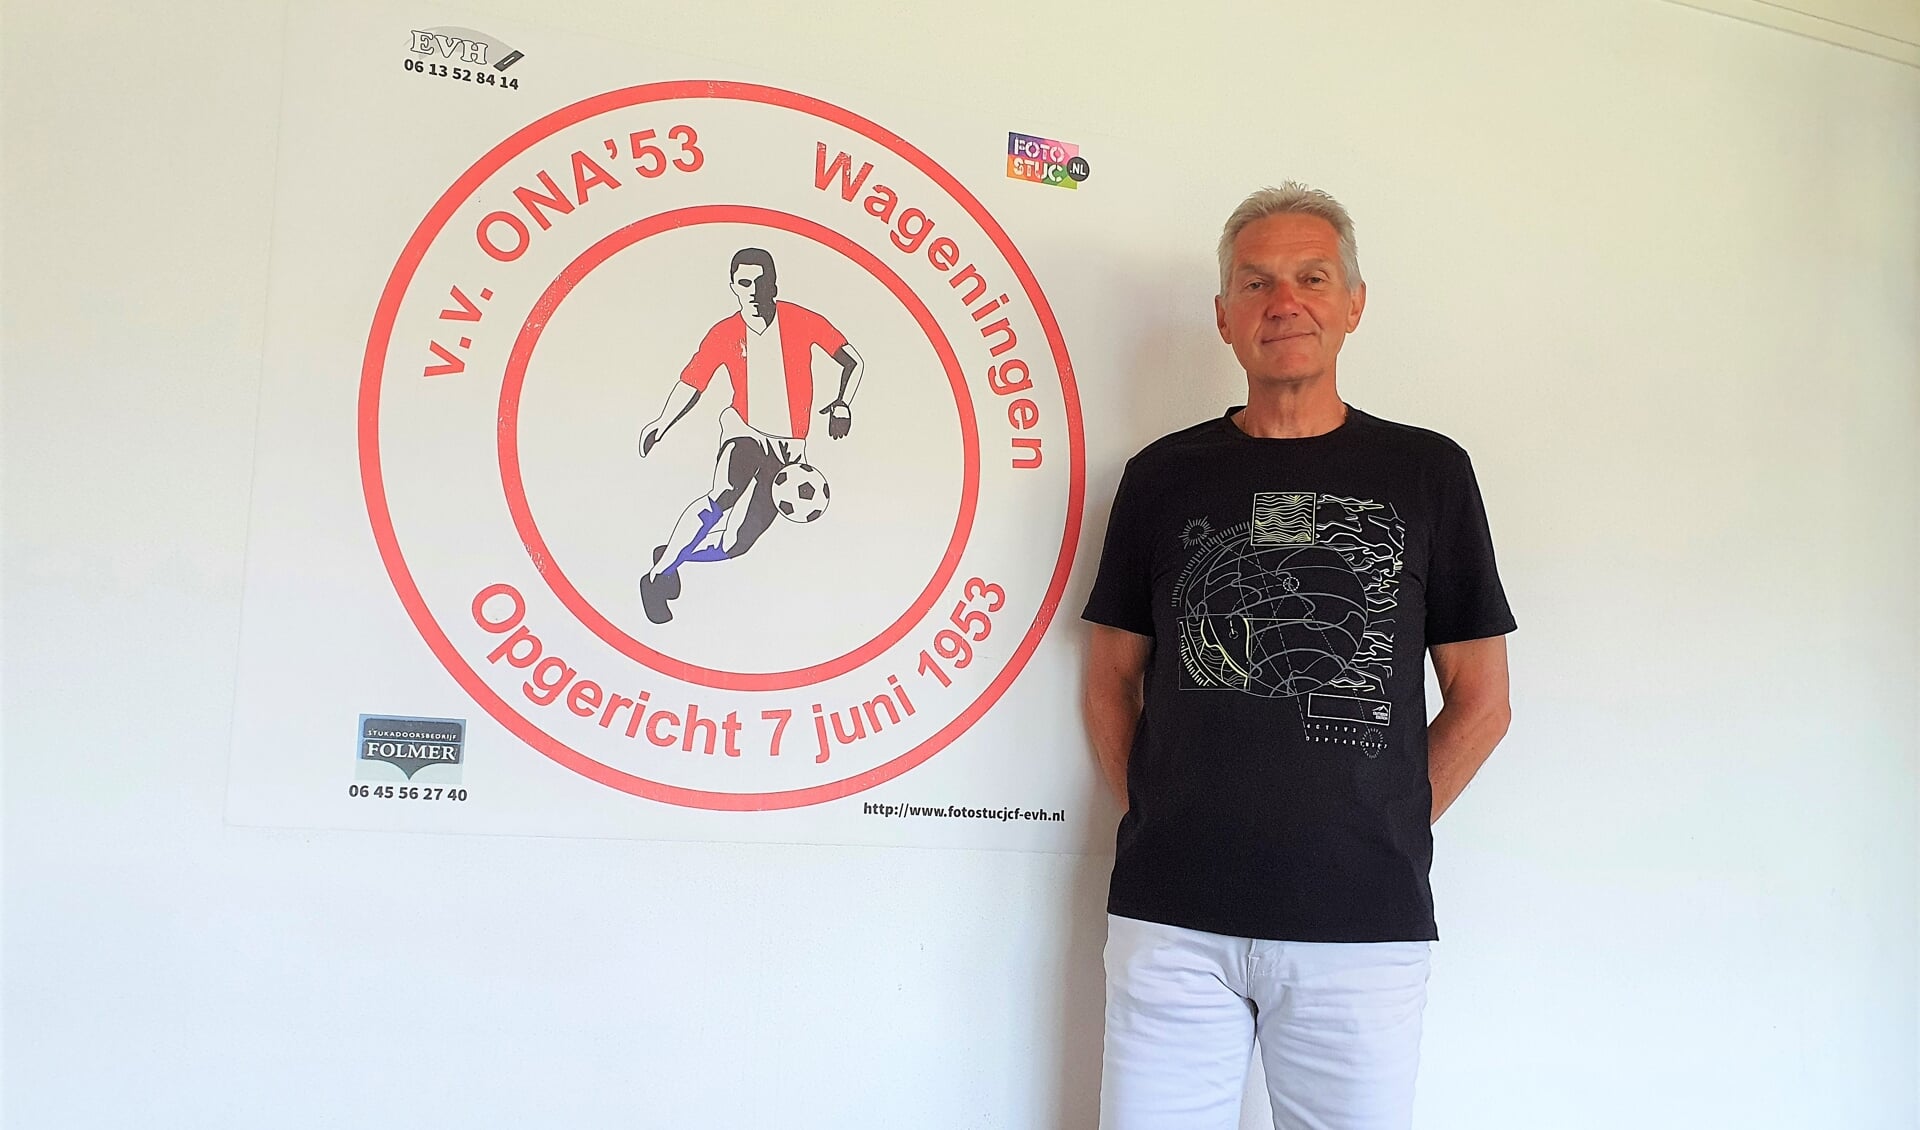 ONA'53-voorzitter Hans Bruyns is trots op zijn club. ,,We groeien nog altijd."